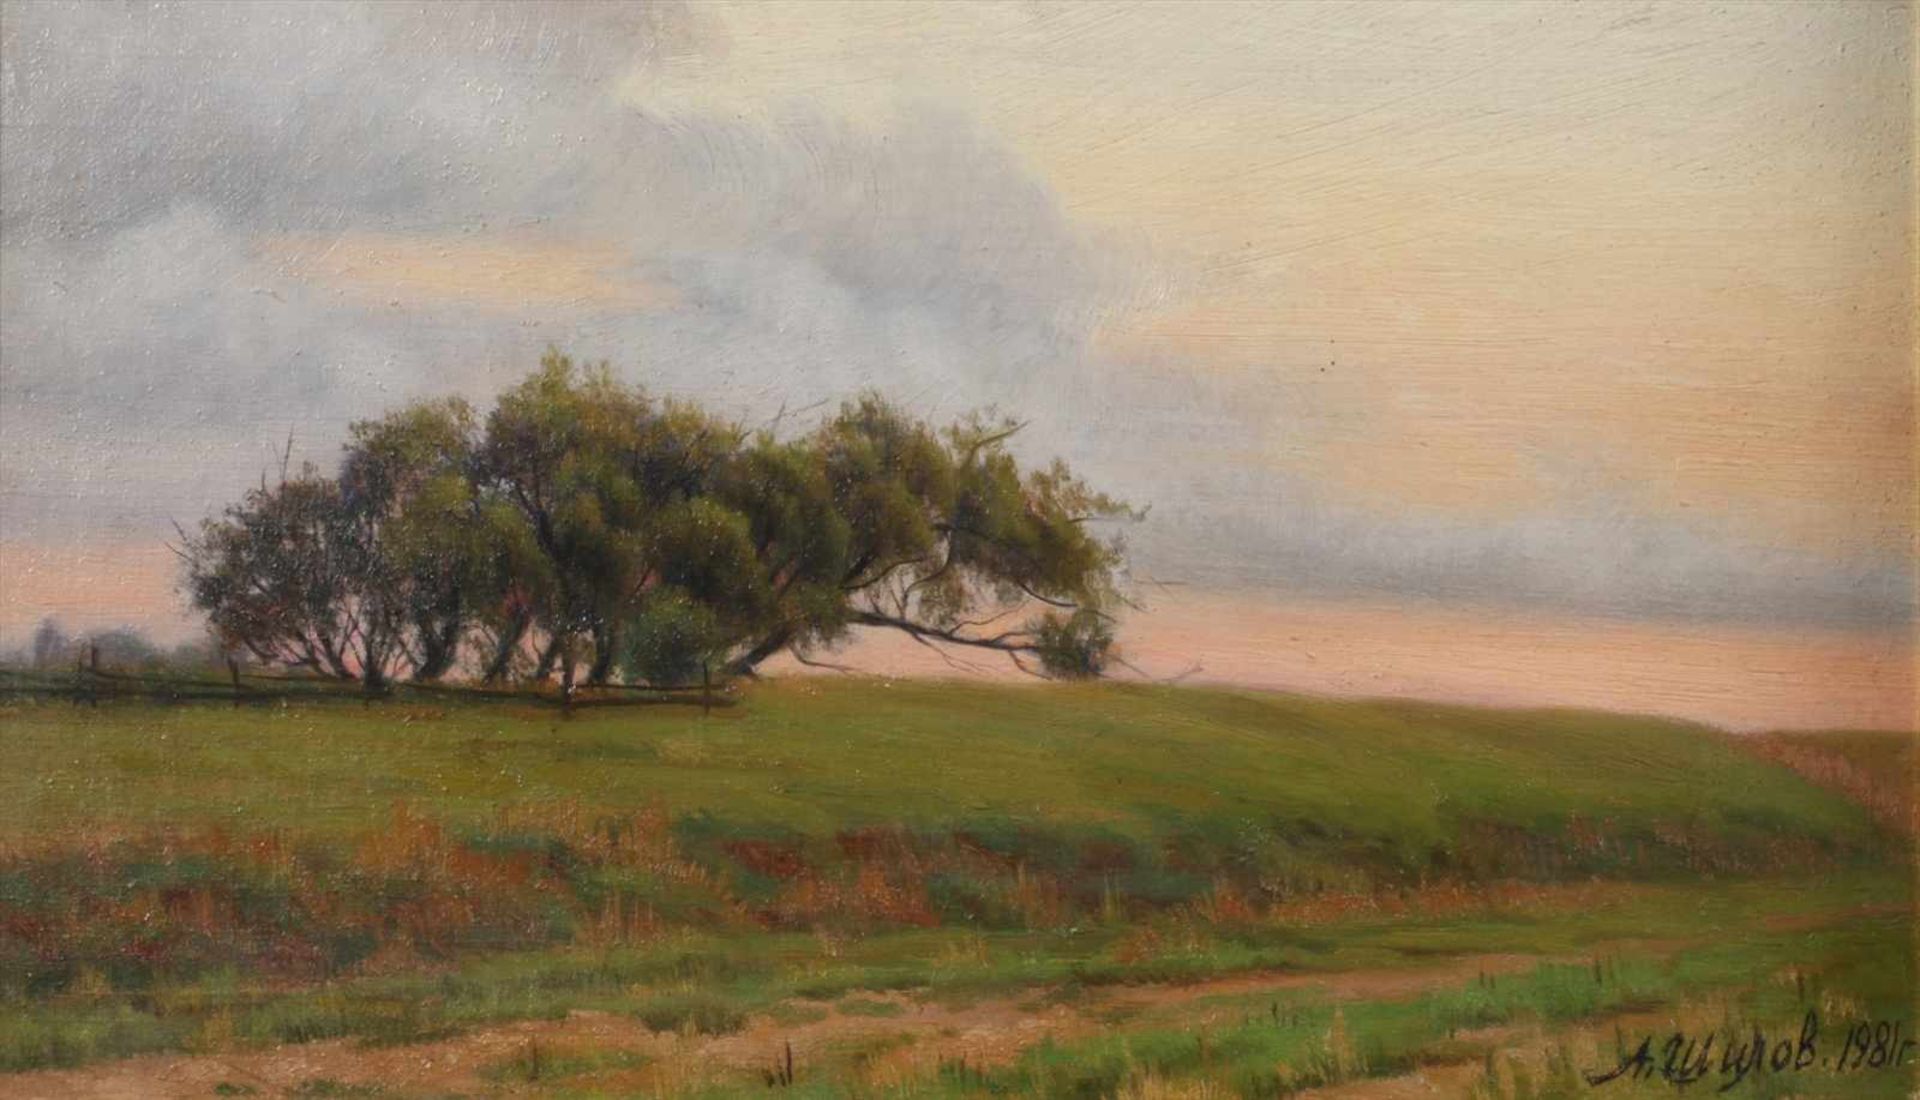 Alexander Shilov, "Bechewo"leicht hügelige Landschaft, mit vom Wind gezeichneter Baumgruppe, im